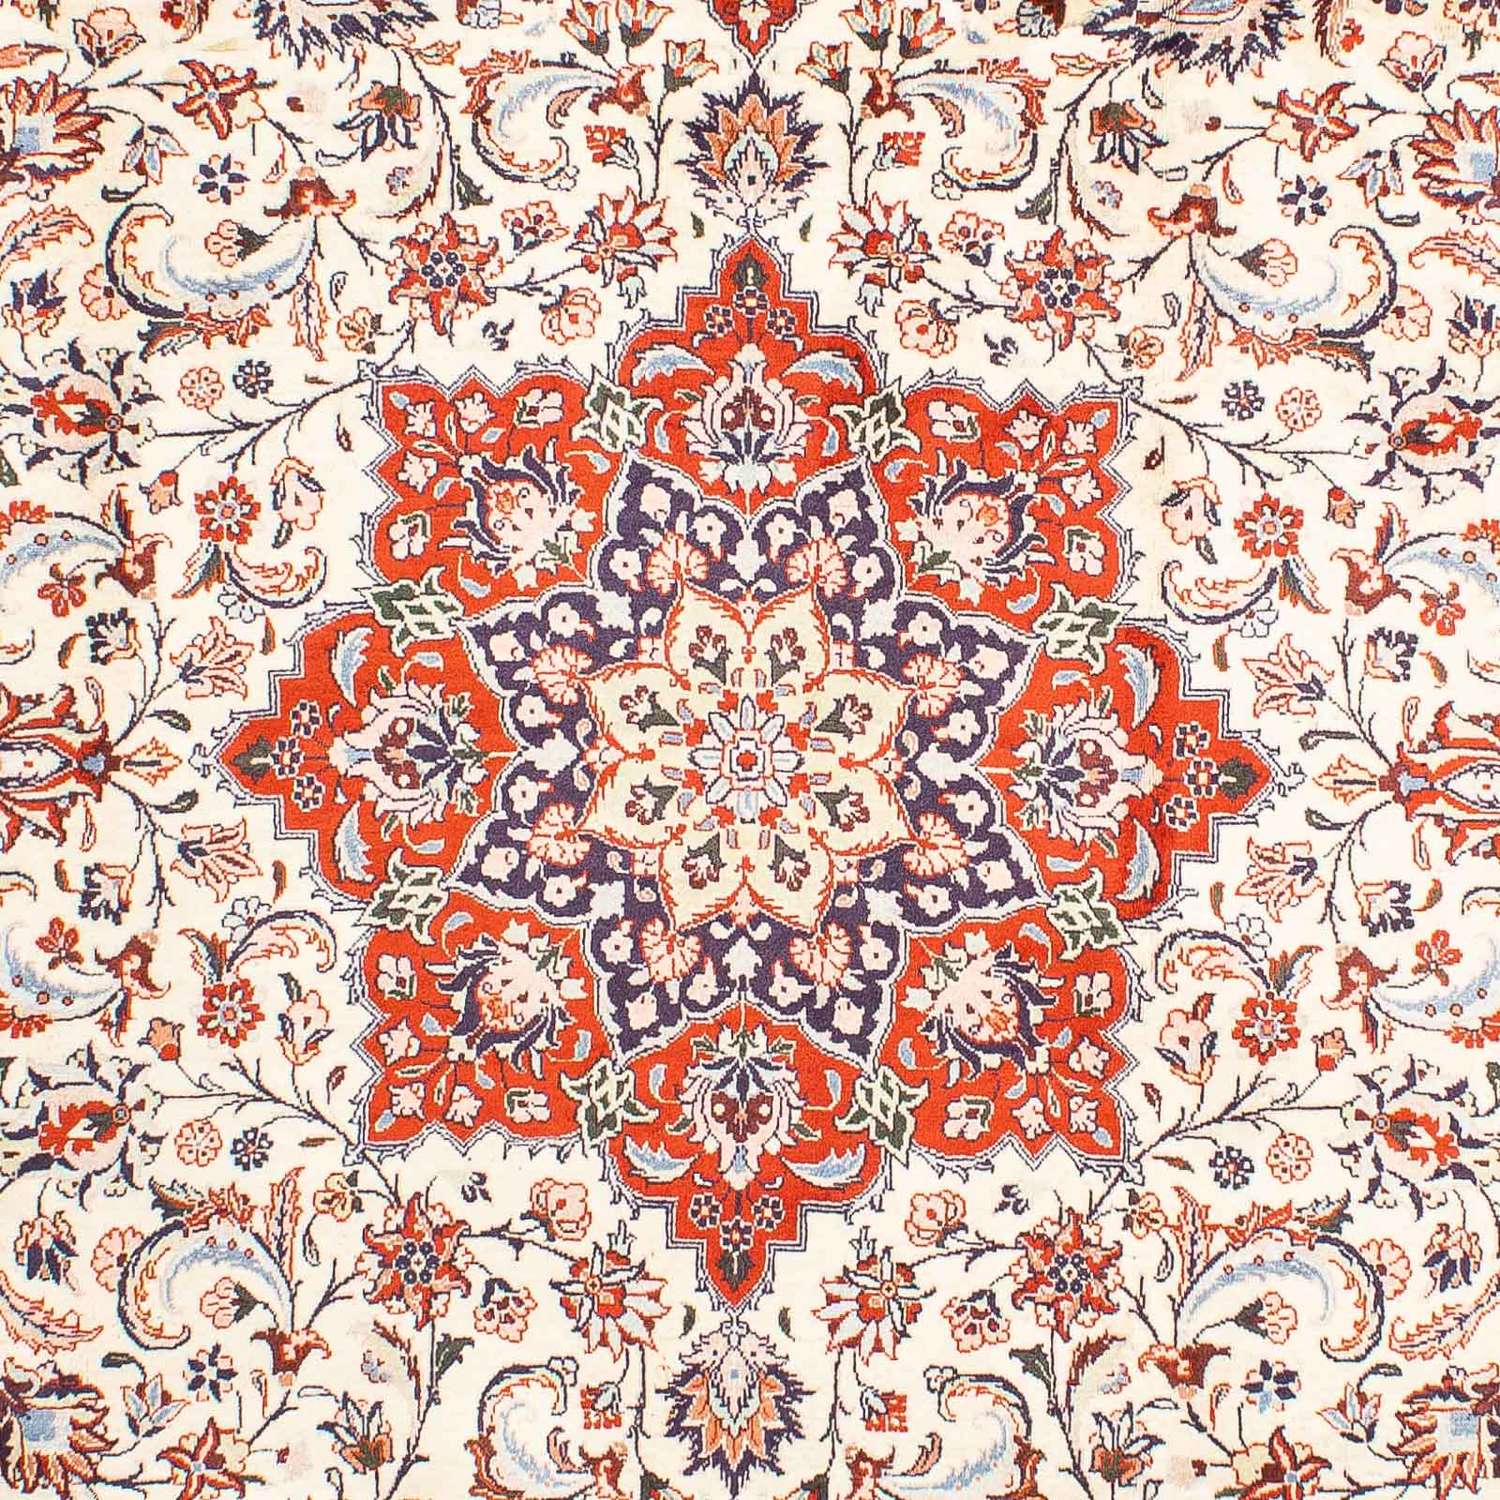 Perzisch tapijt - Klassiek - 298 x 207 cm - beige